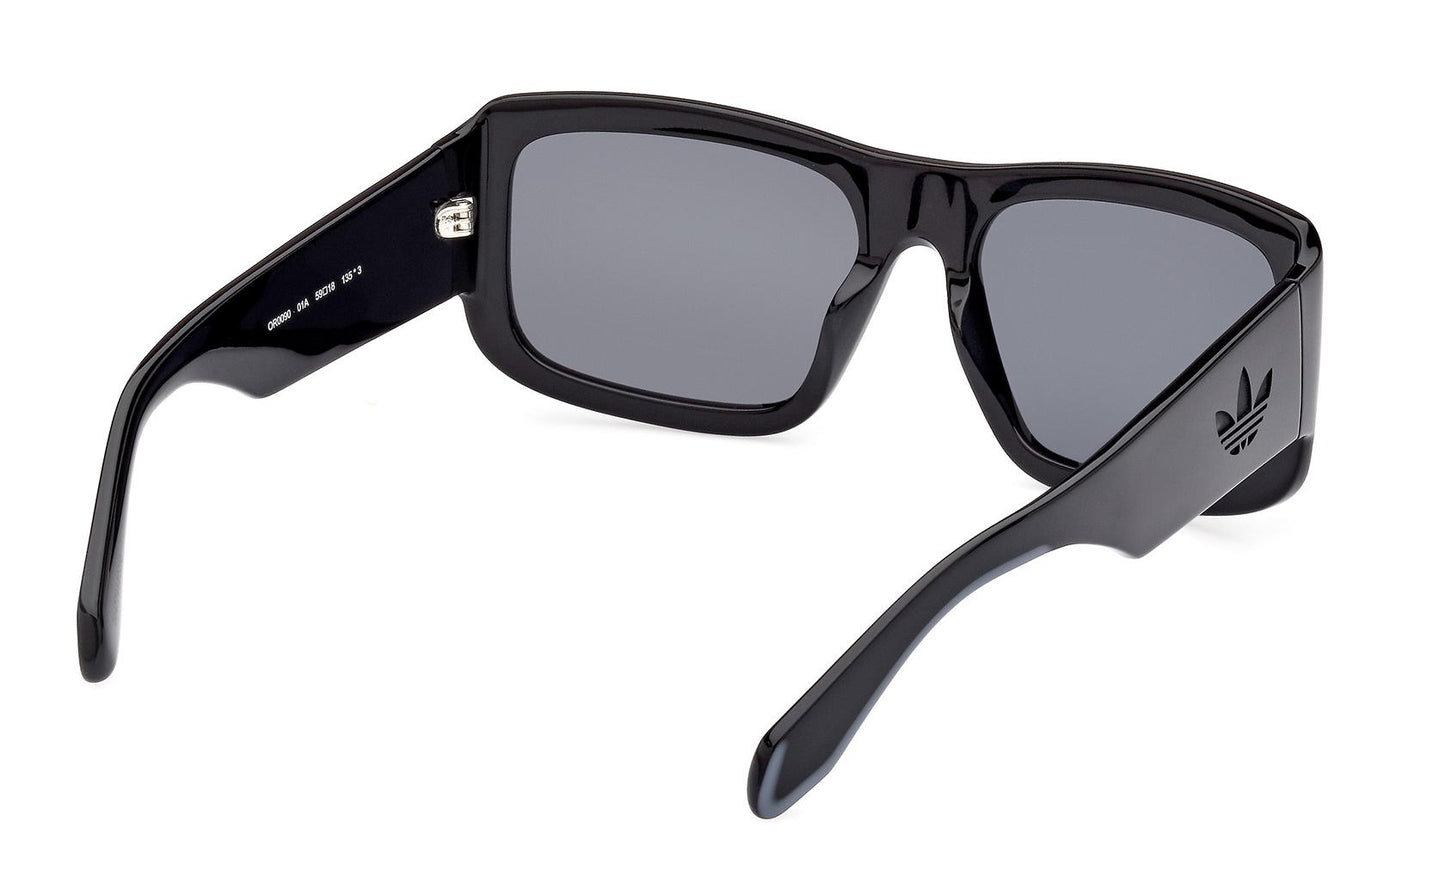 Adidas Originals Sunglasses OR0090 01A